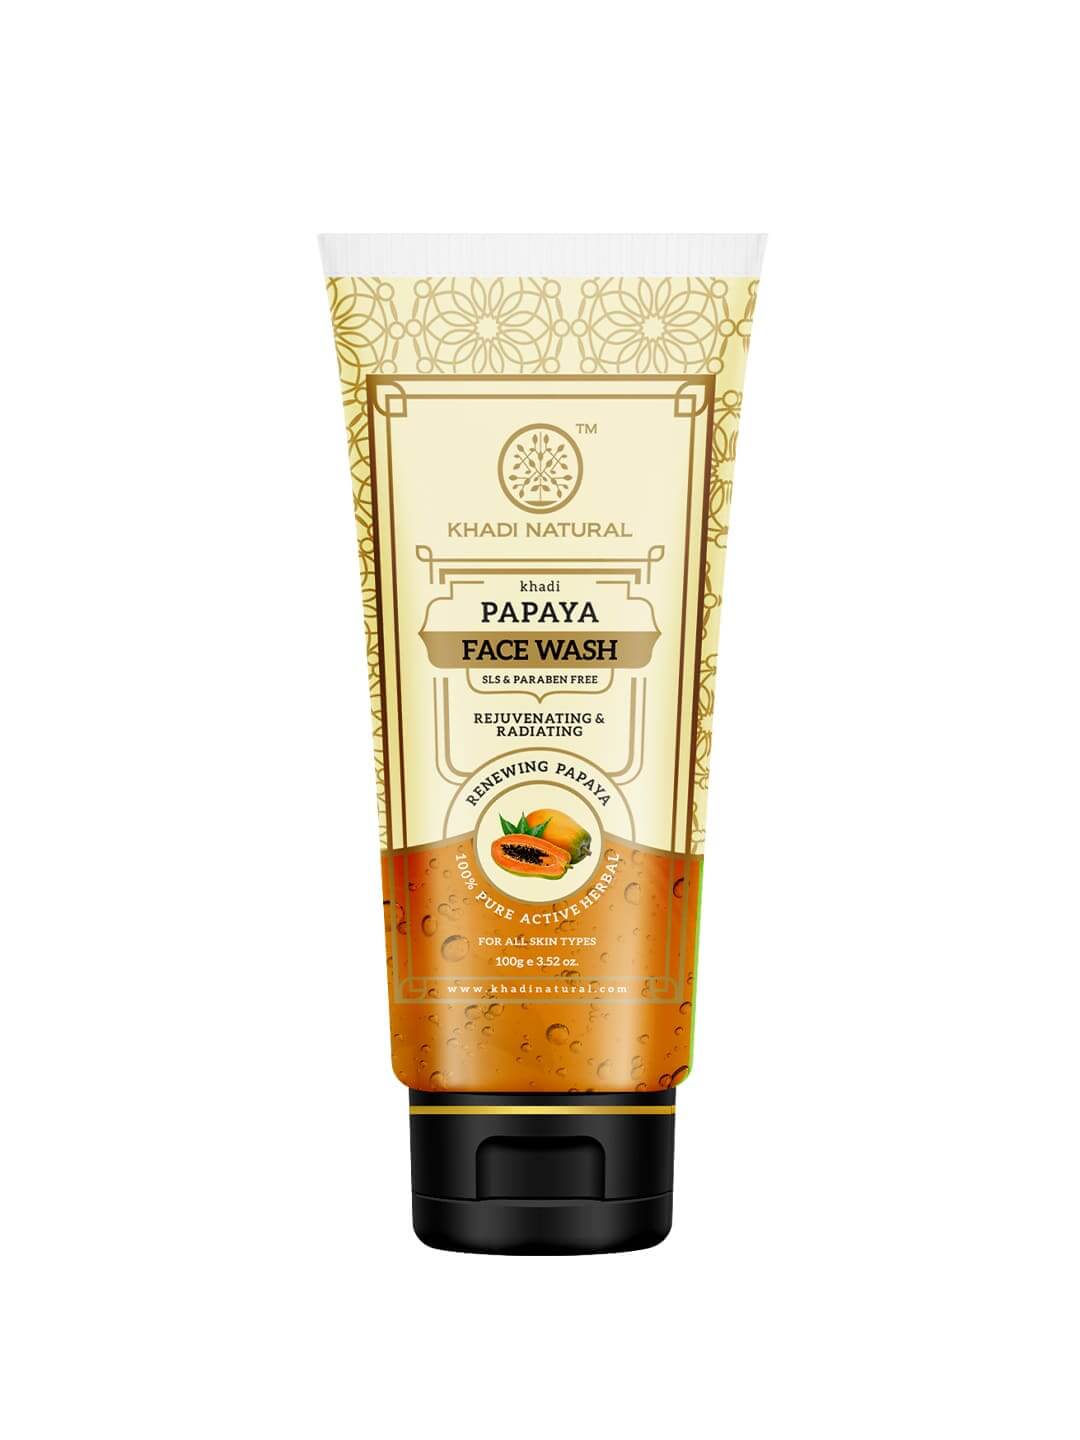 Khadi Natural Papaya Face Wash Sls & Paraben Free